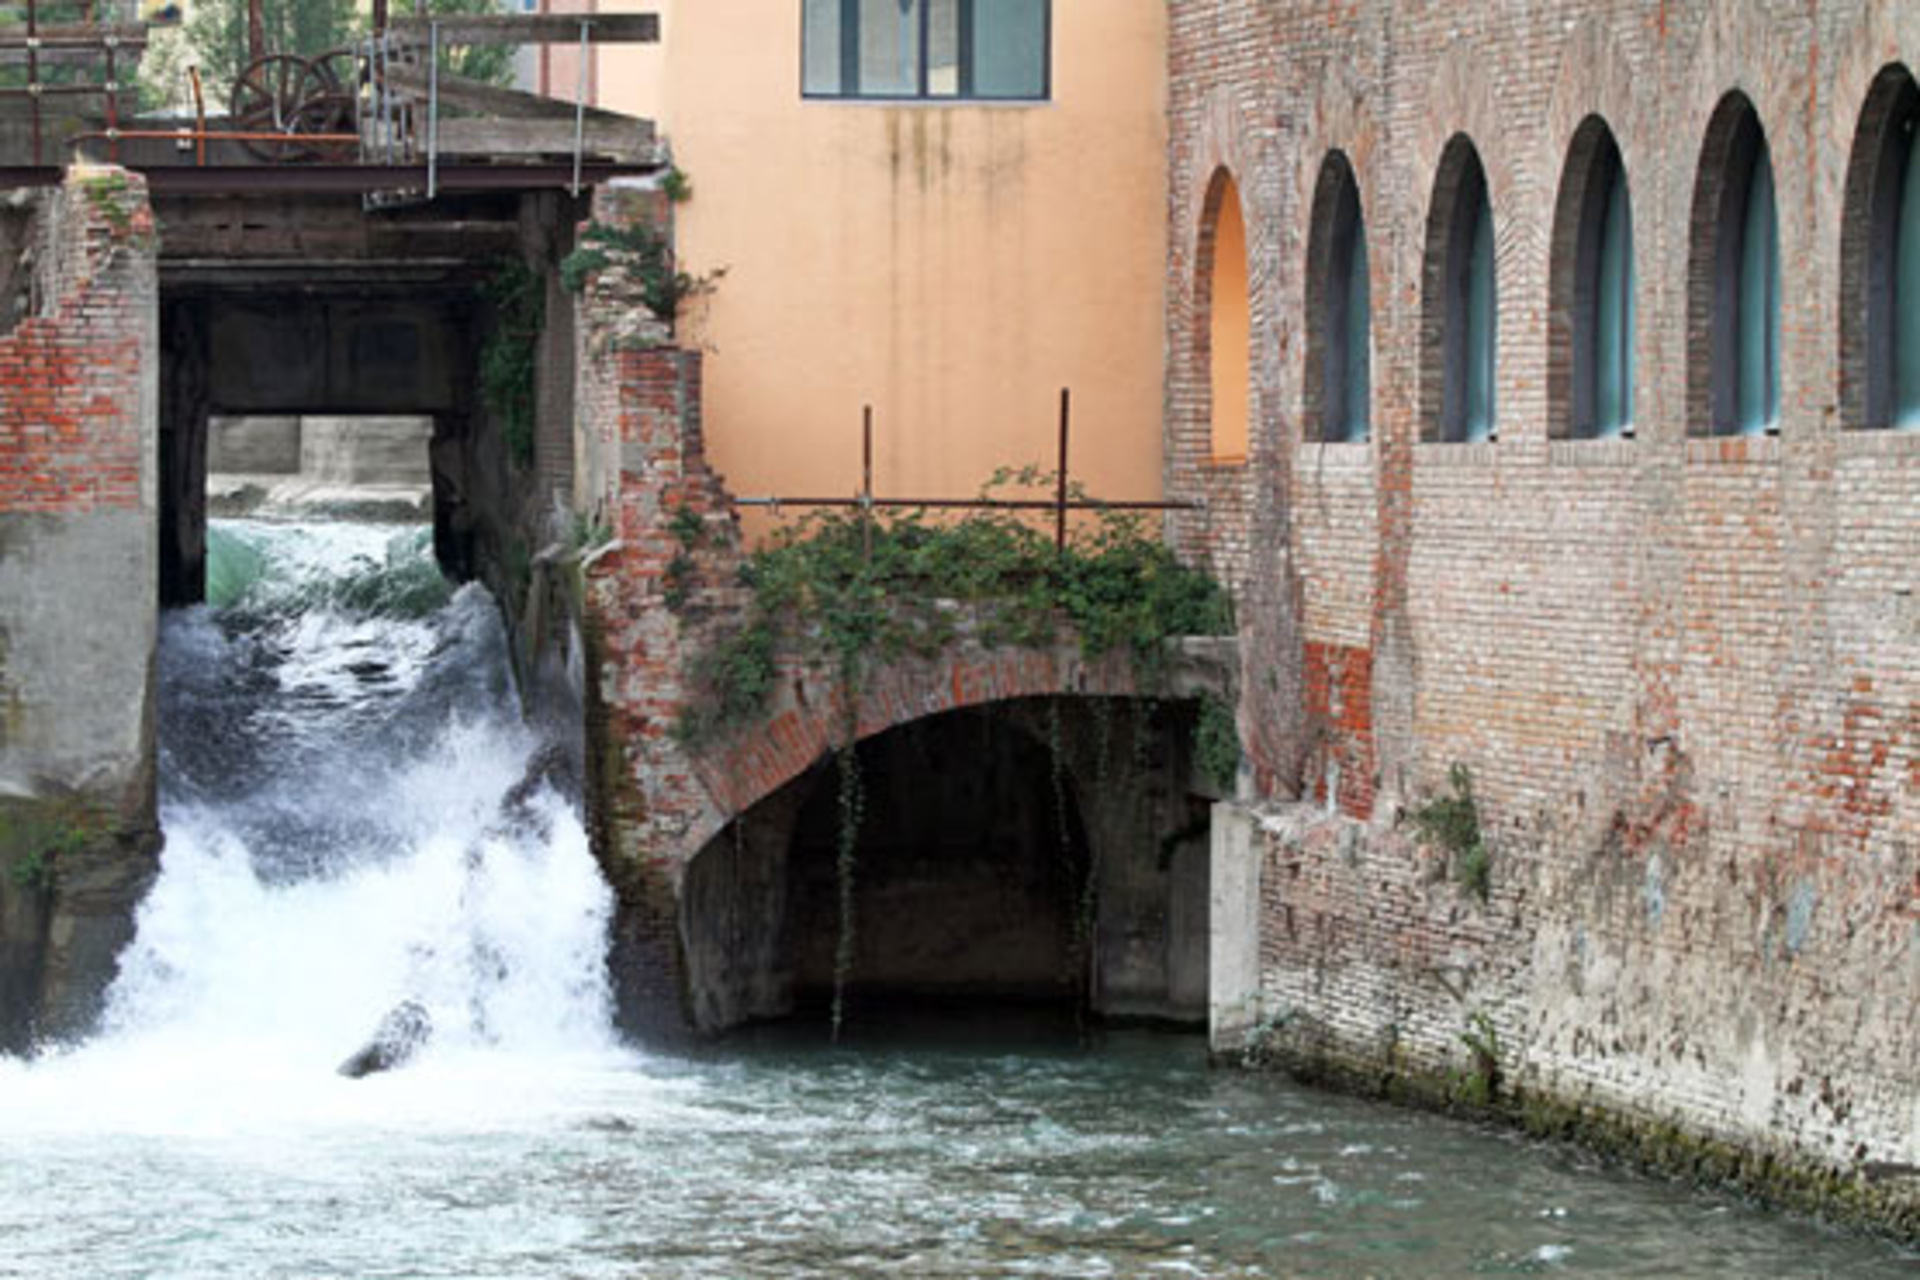 Pioggia: il canale di Reno nel pieno centro storico di Bologna